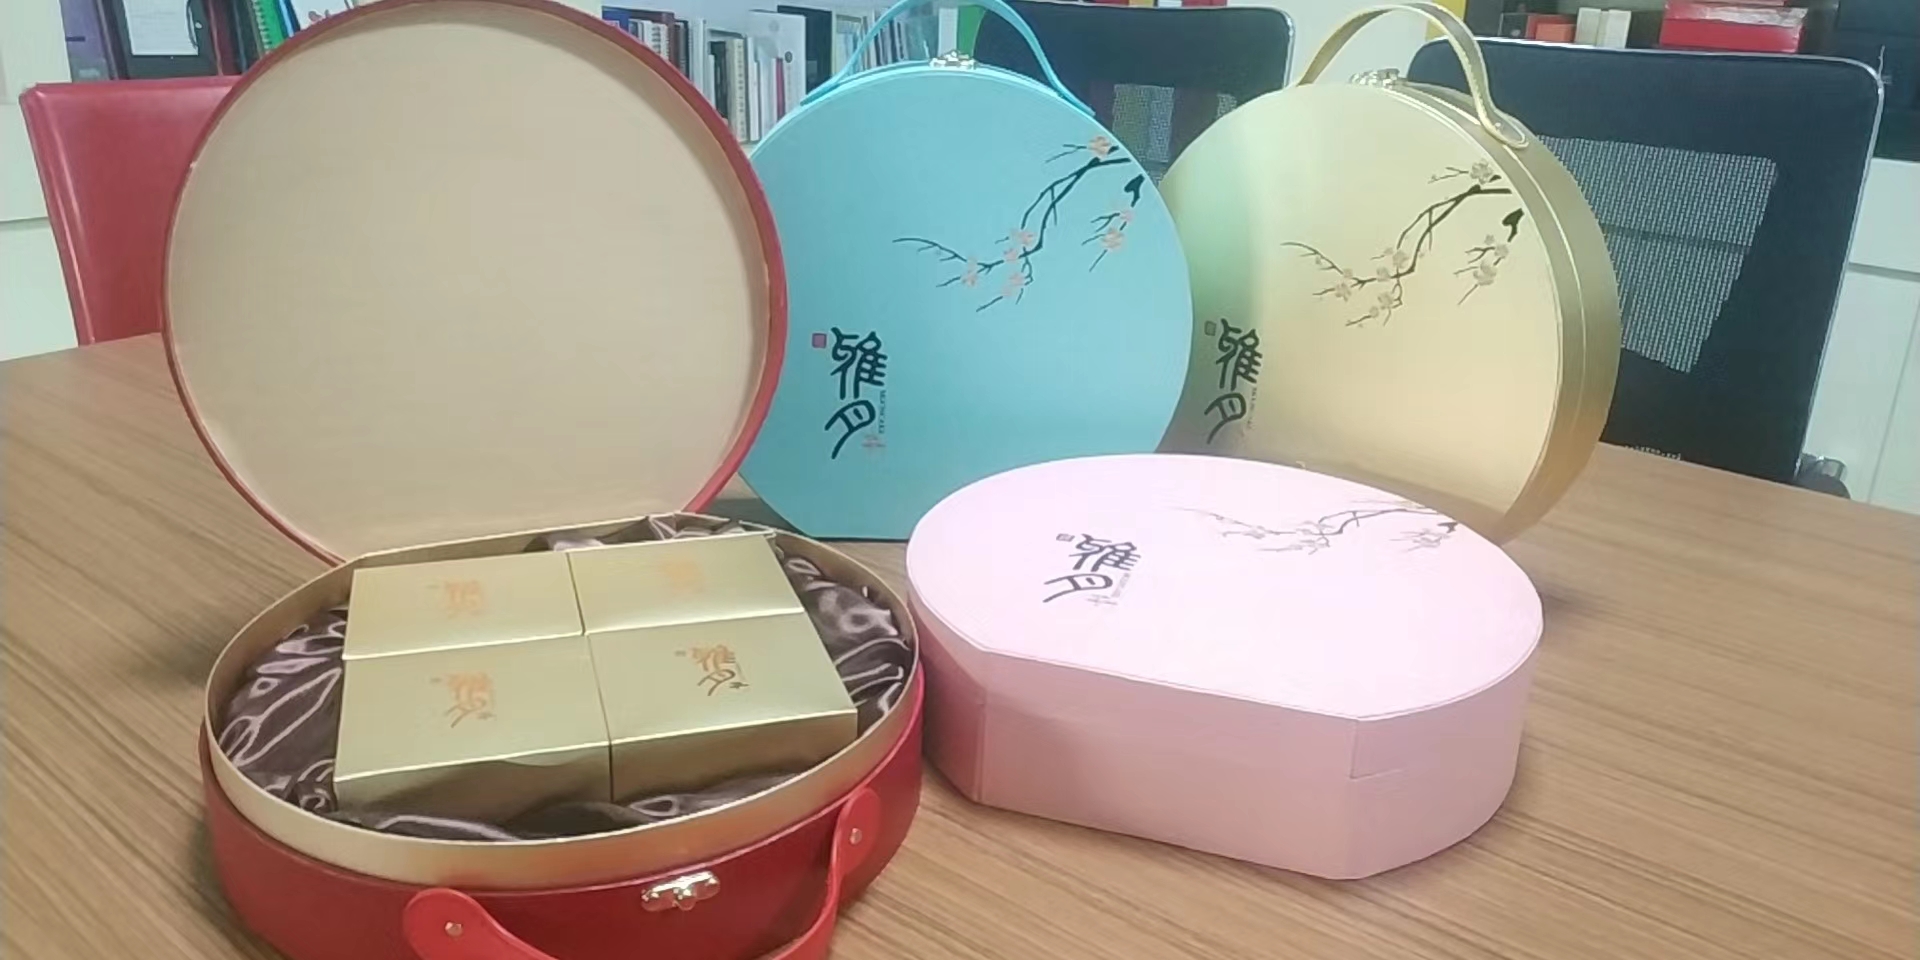 惠州月饼盒厂家定做、多少钱一个、怎么卖、价格【广州广源包装彩印有限公司】图片